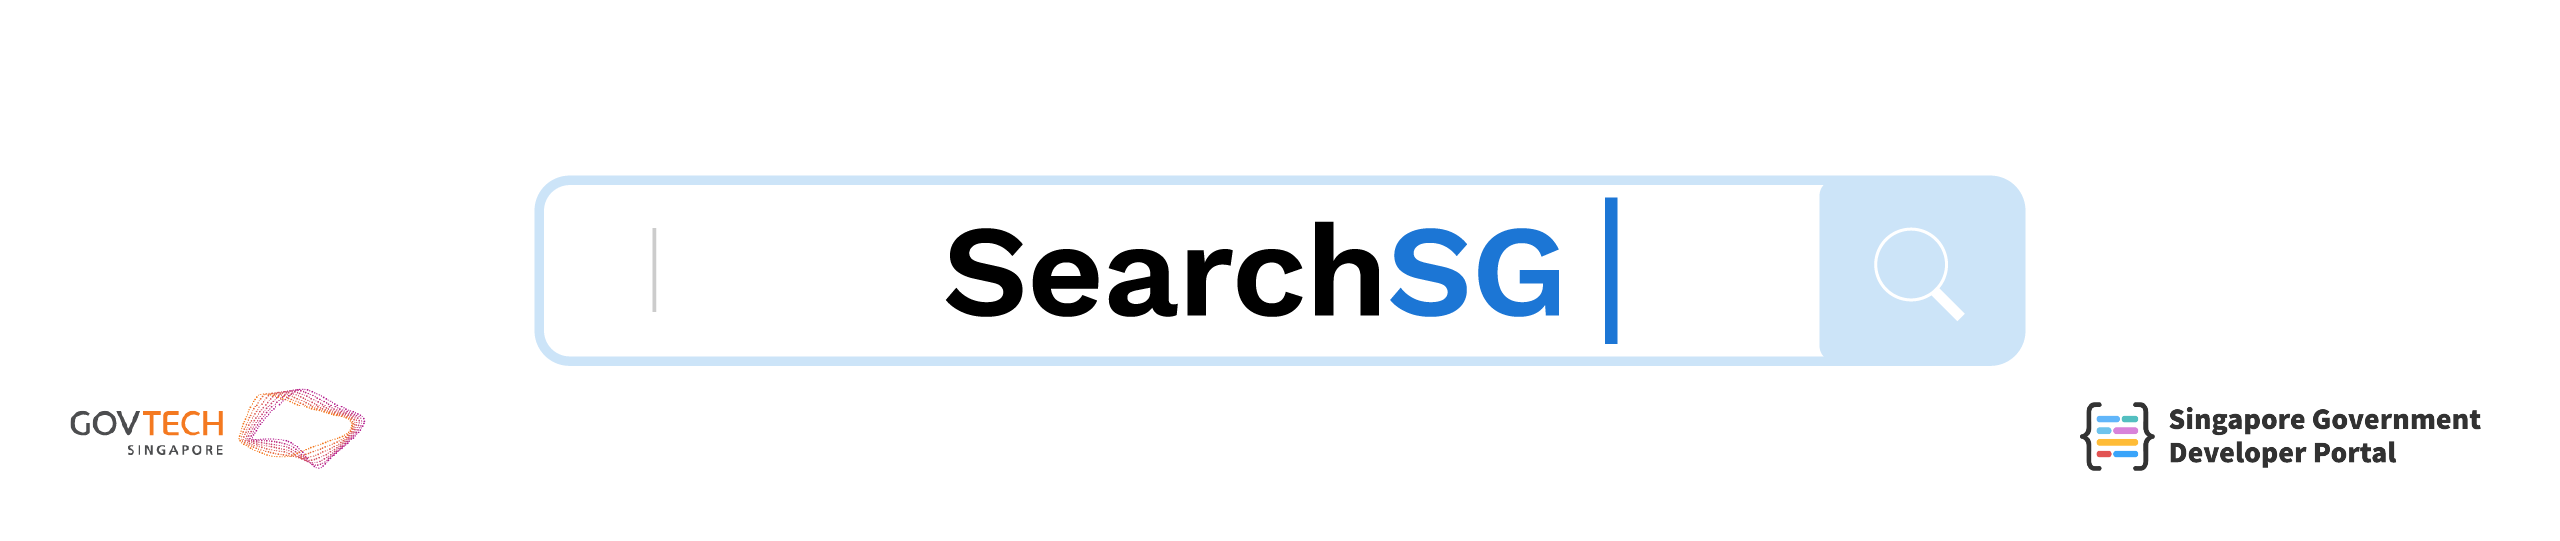 SearchSG header banner